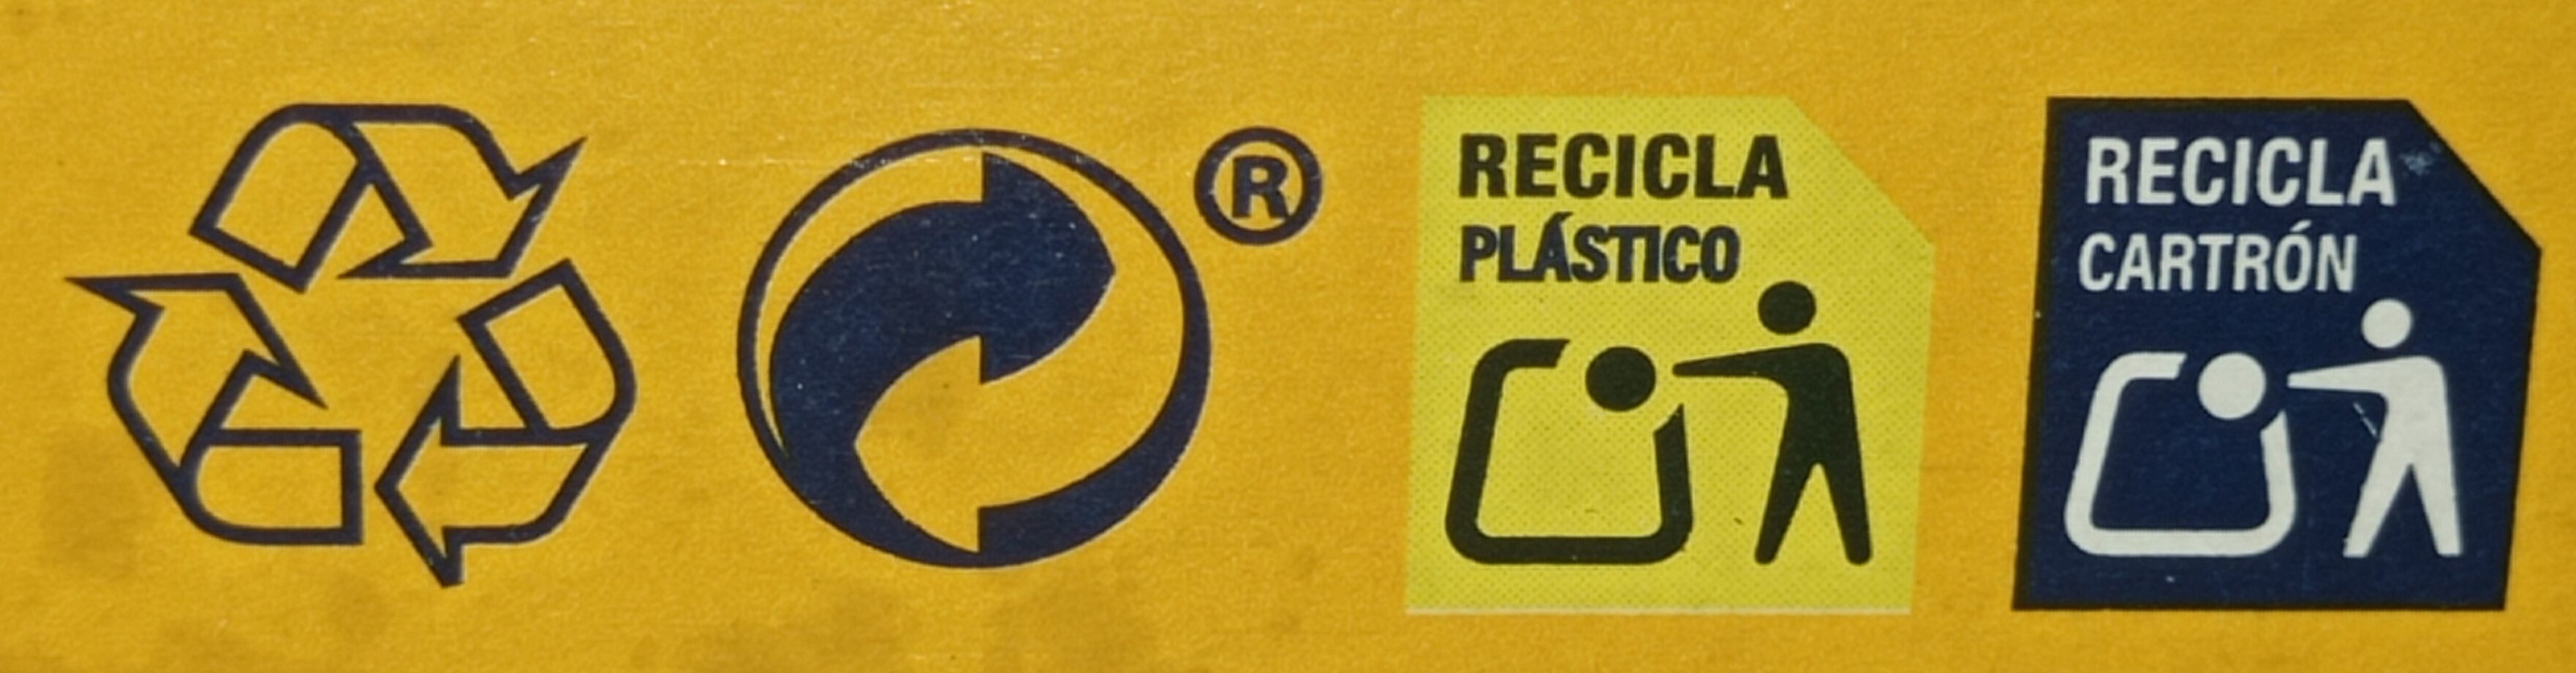 Mini Tostas Rectangulares Ortiz - Instruccions de reciclatge i/o informació d’embalatge - es